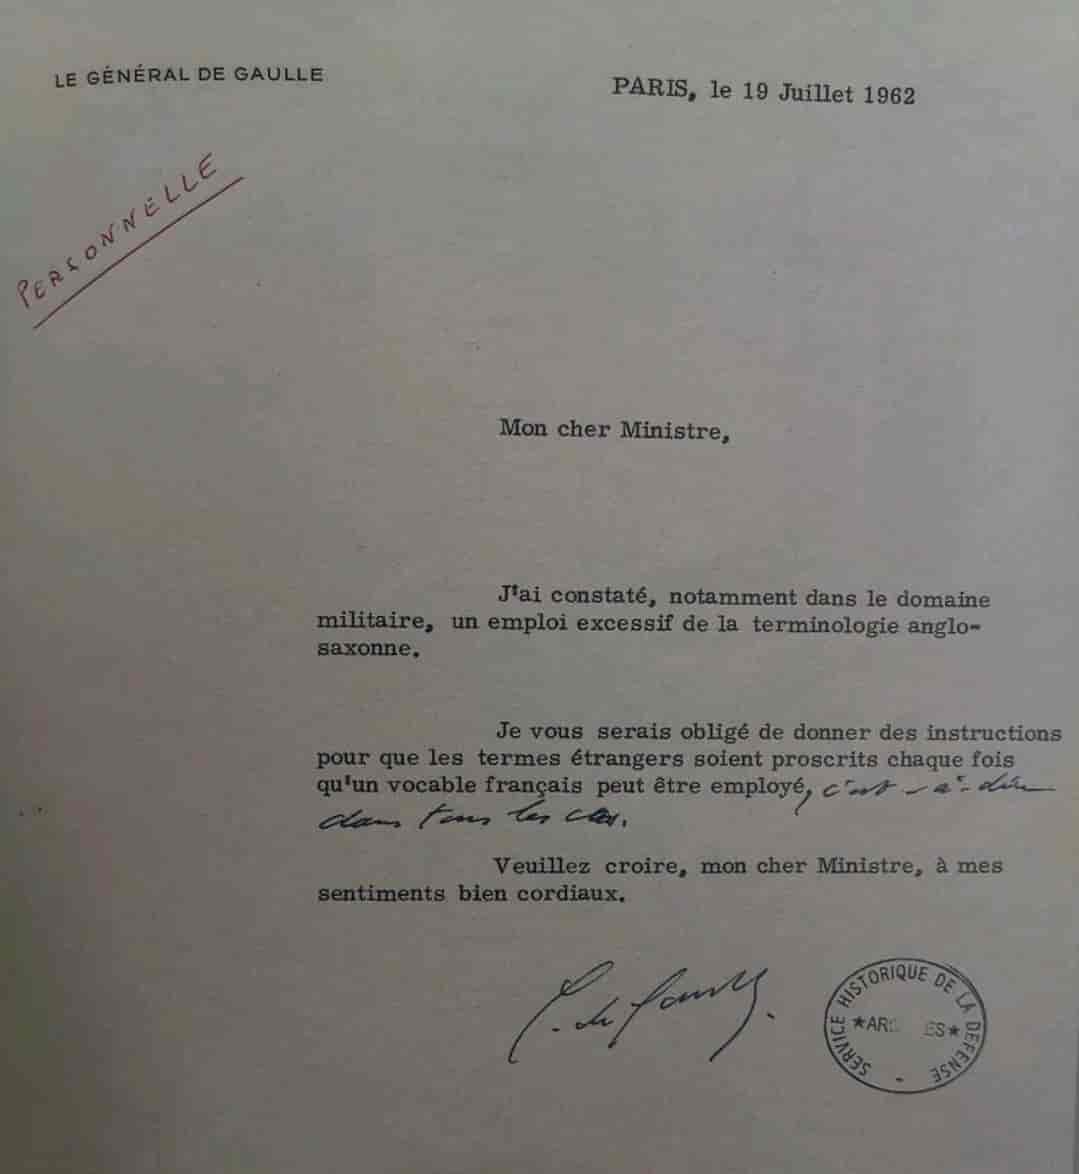 19 juillet 1962, le Général de Gaulle écrit à Pierre Messmer, Ministre des Armées, la lettre suivante :